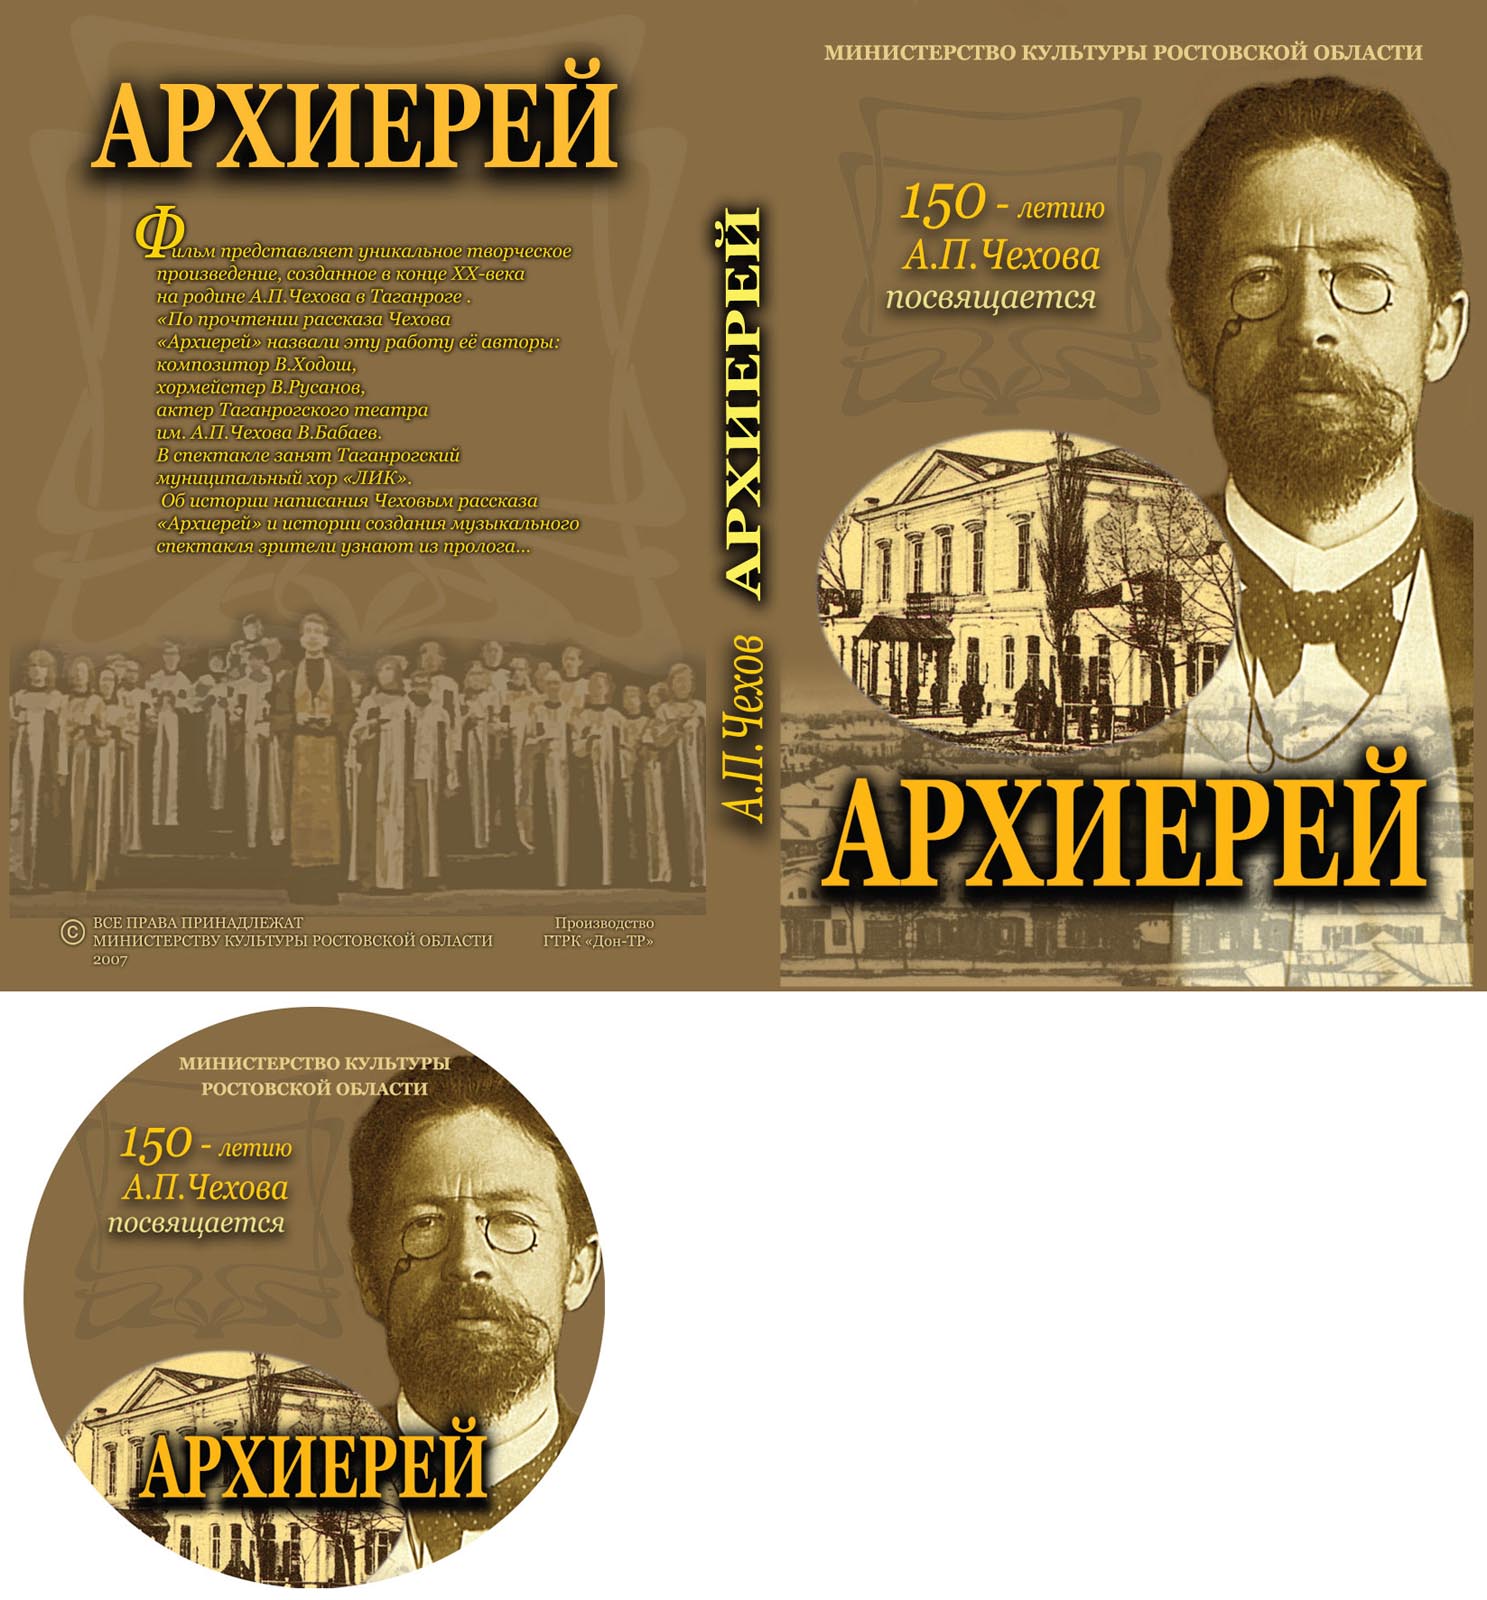 Буклет DVD-Amarey для Министерства культуры Ростовской области